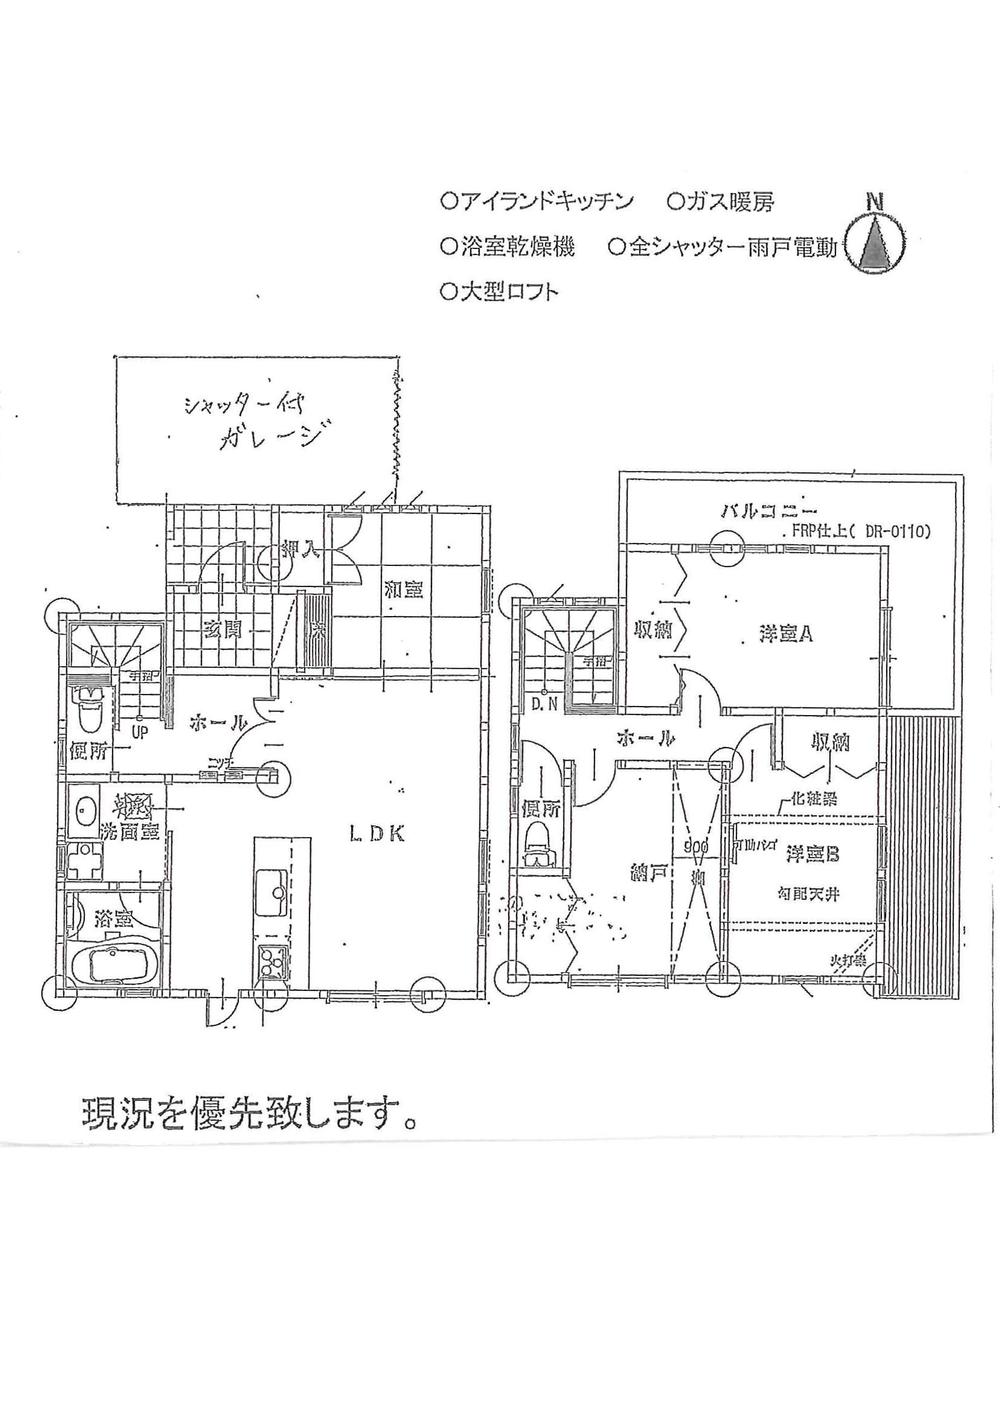 Floor plan. 23.6 million yen, 4LDK, Land area 100.45 sq m , Building area 96.39 sq m